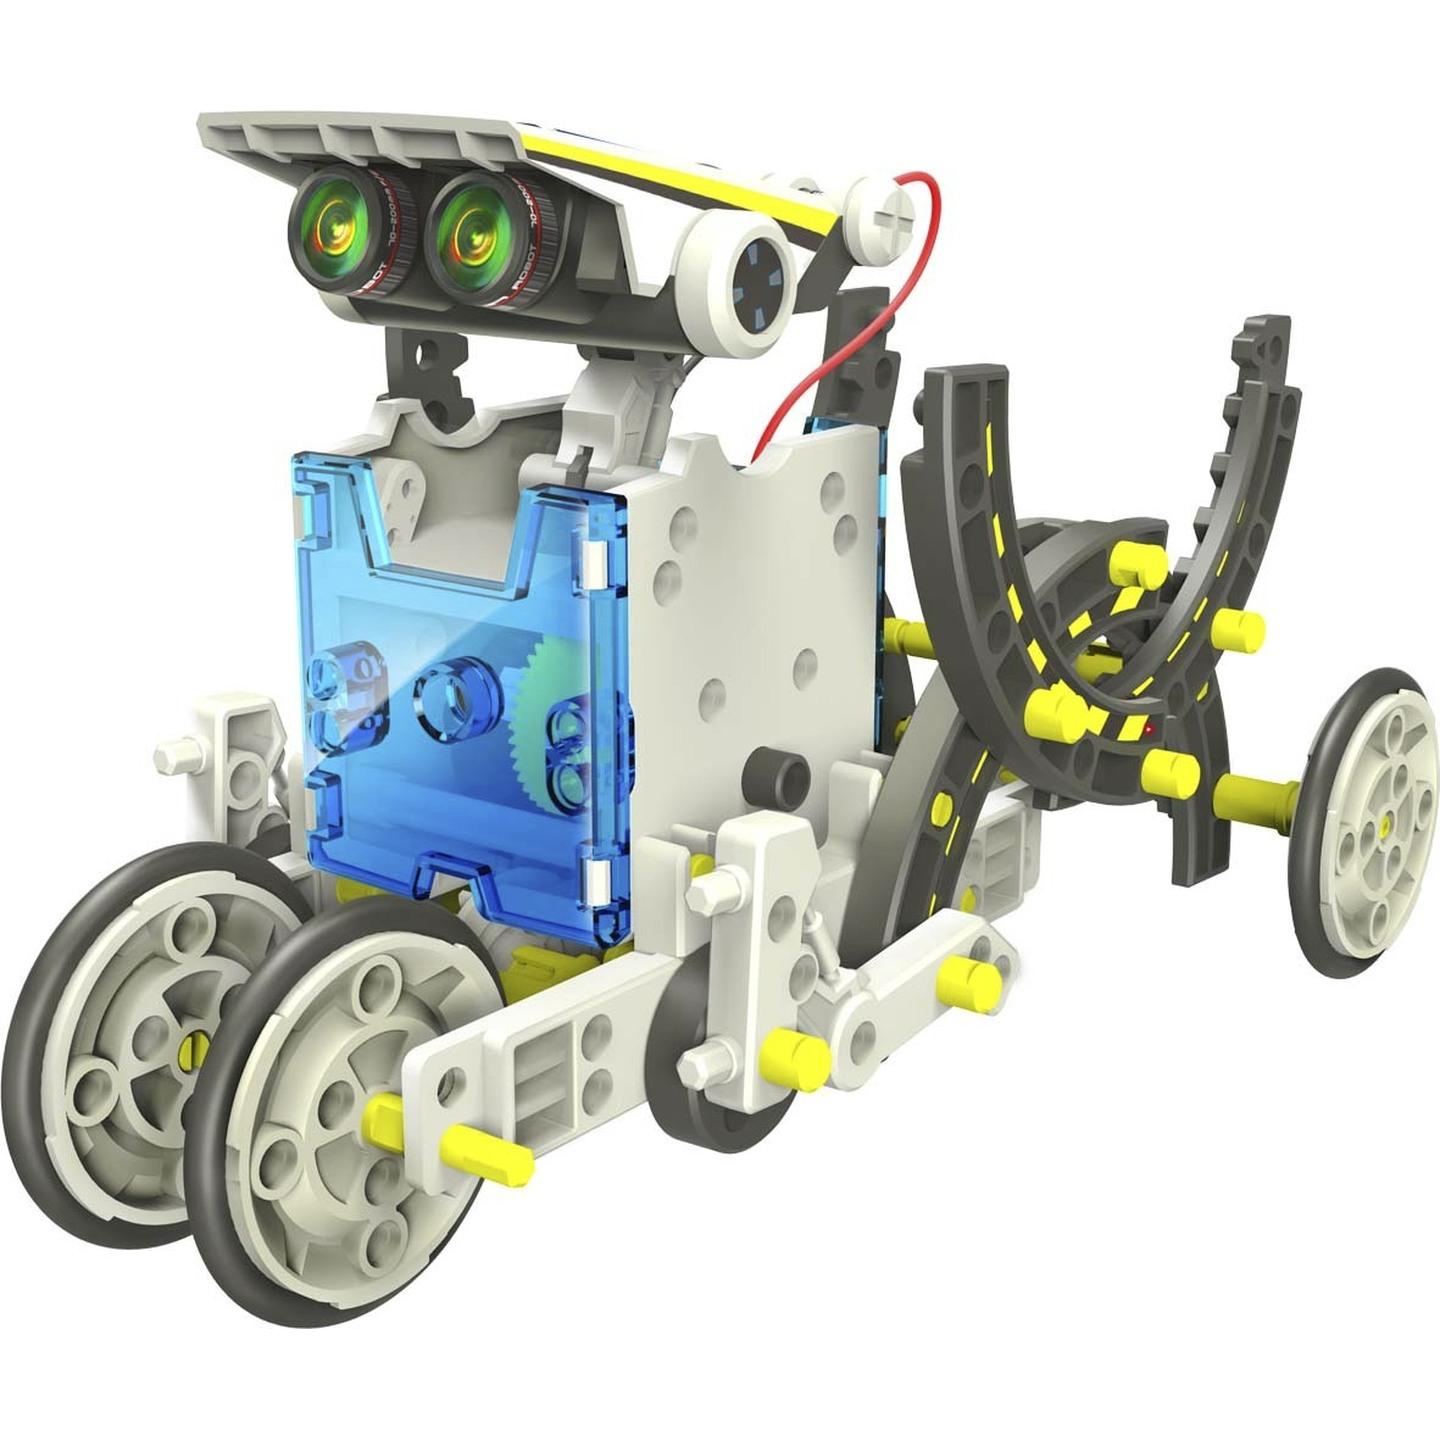 14 in 1 Solar Robot Educational Kit